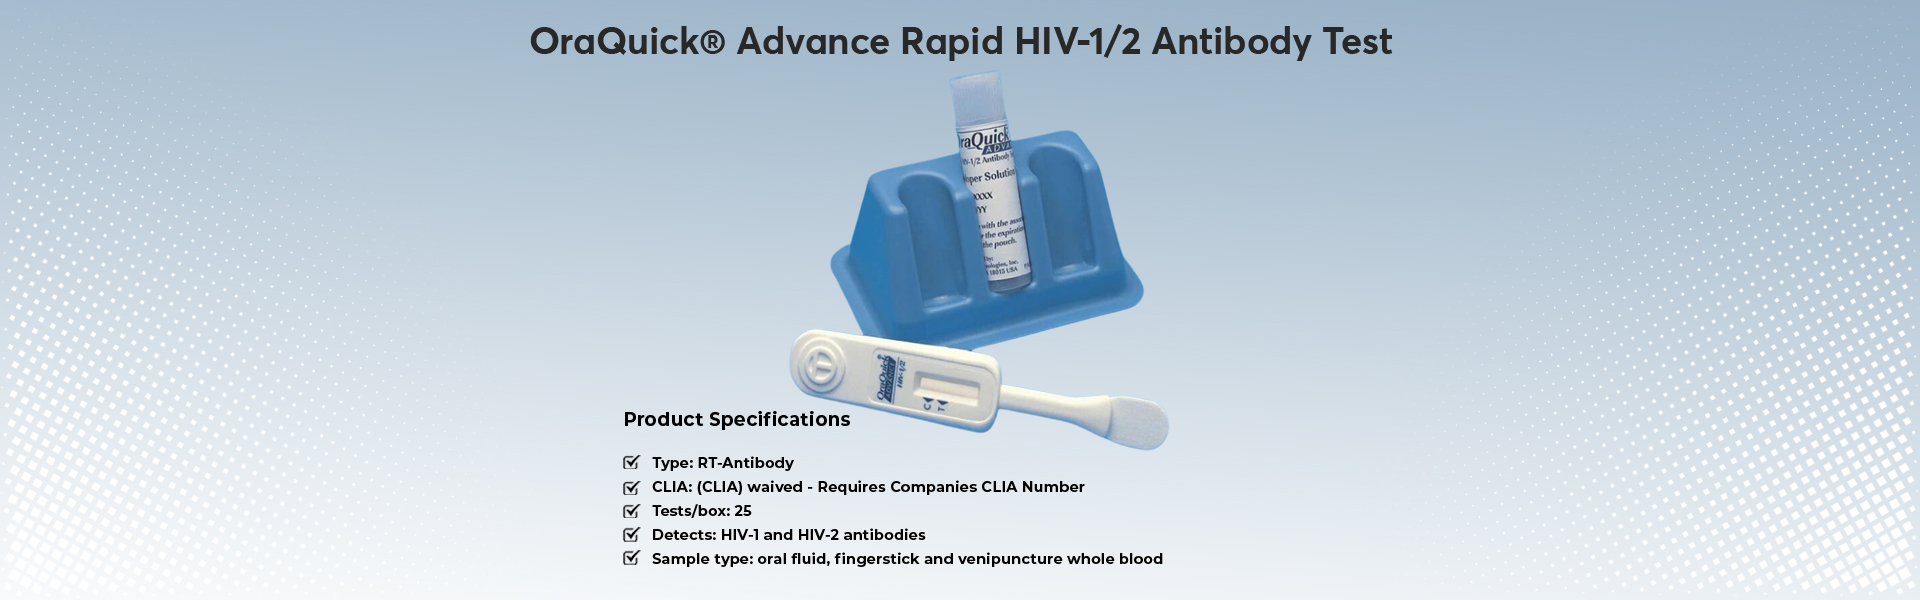 OraQuick-Advance-Rapid-HIV-1-2-Antibody-Test